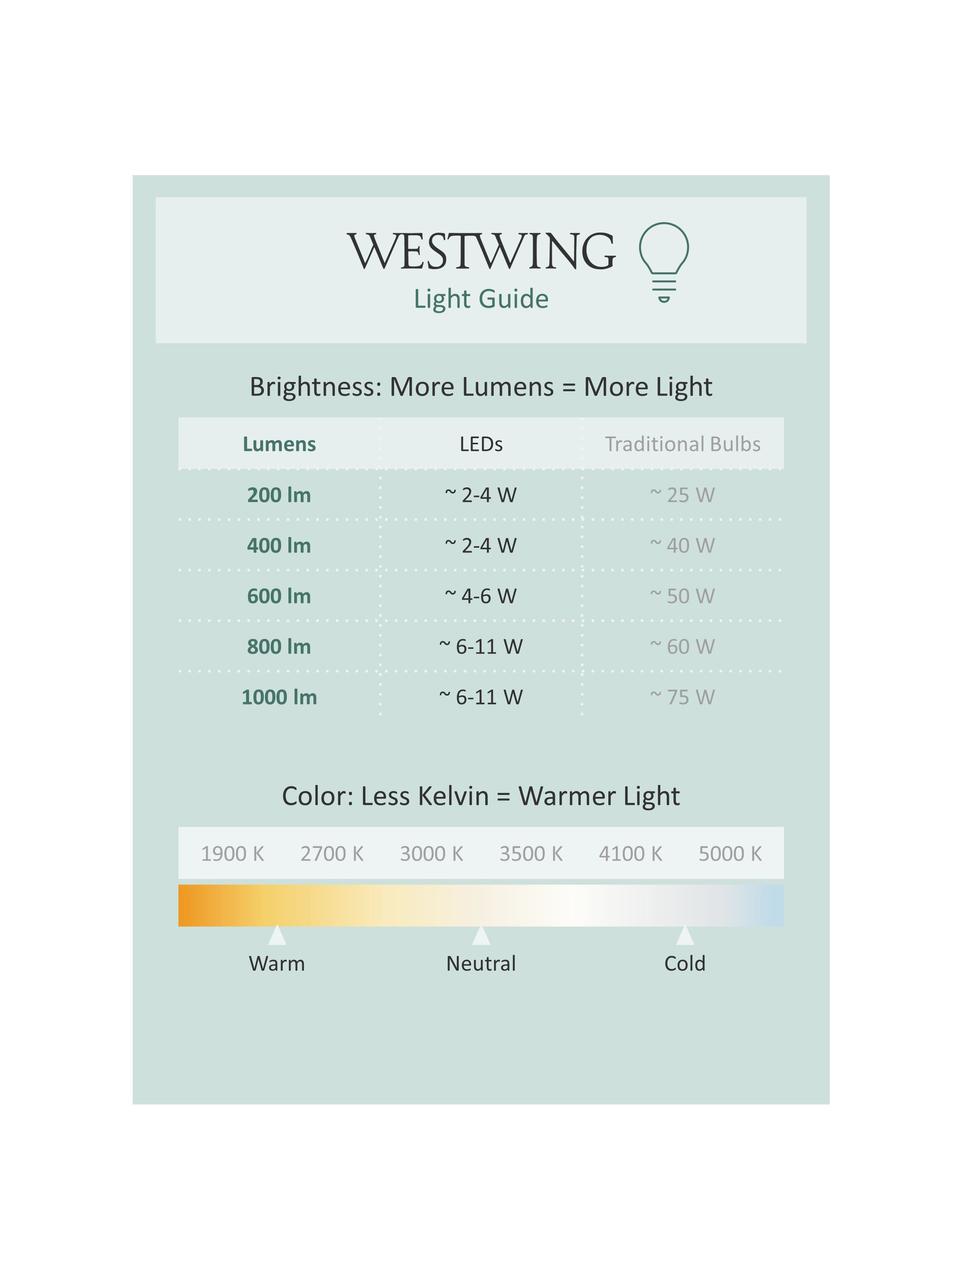 Stmívatelné nástěnné LED svítidlo Hester, Bílá, Š 20 cm, V 26 cm